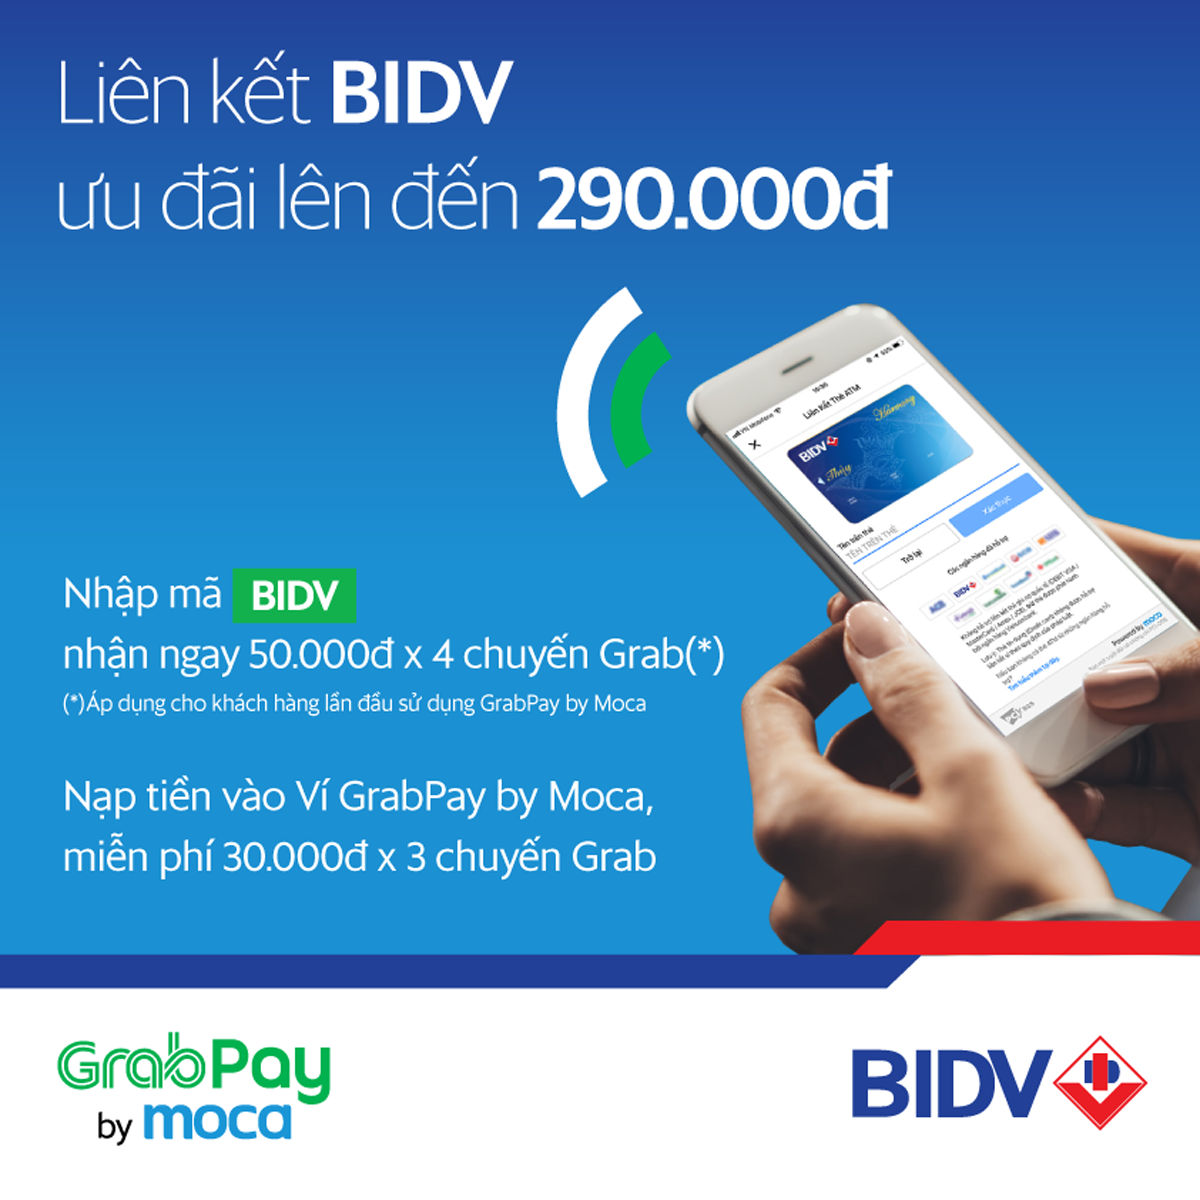 2 chương trình ưu đãi hấp dẫn GrabPay by Moca dành cho khách hàng BIDV